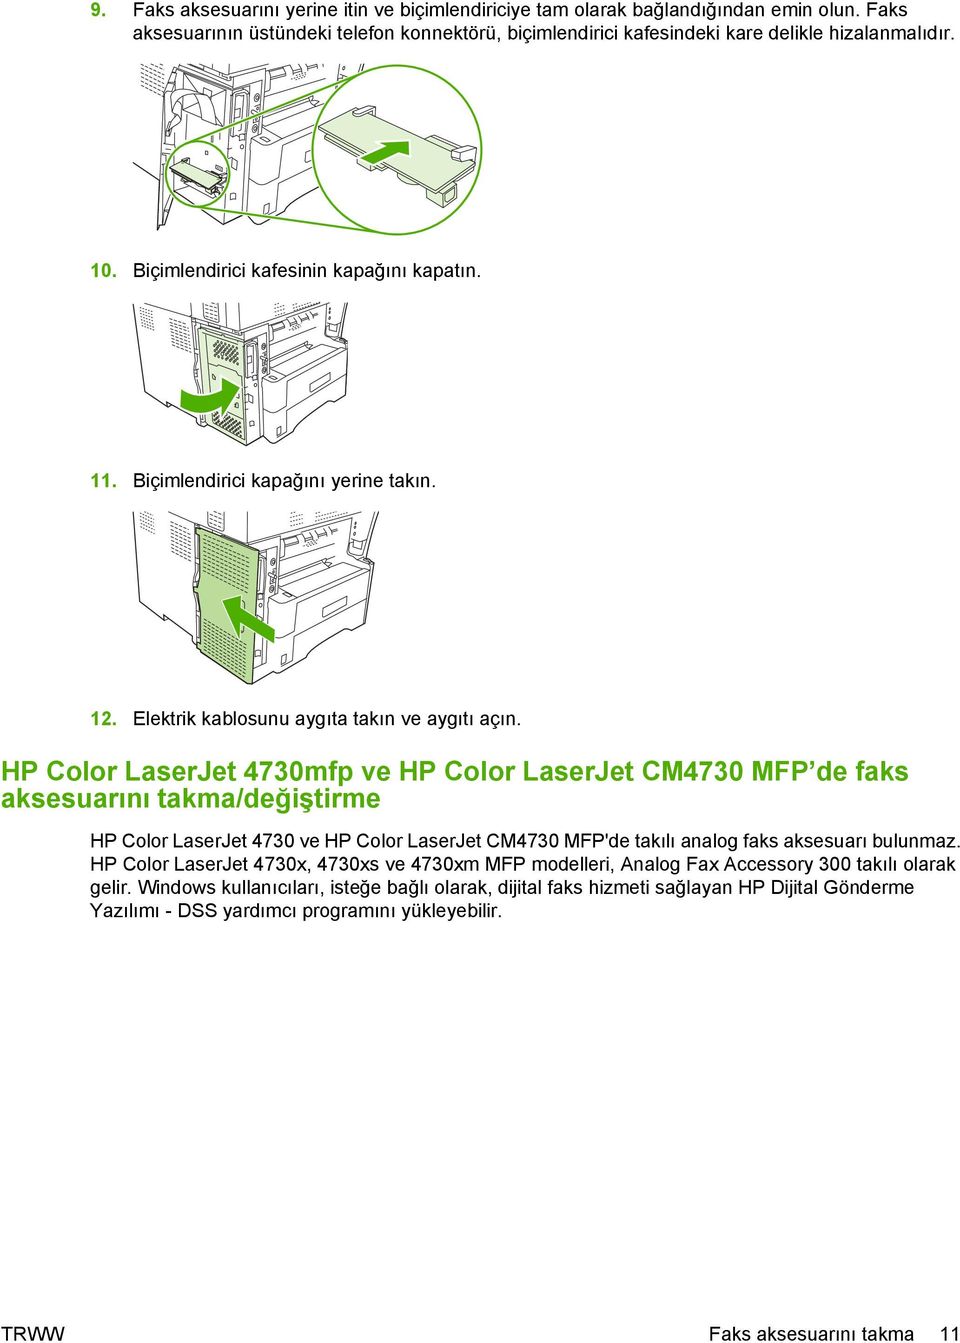 HP Color LaserJet 4730mfp ve HP Color LaserJet CM4730 MFP de faks aksesuarını takma/değiştirme HP Color LaserJet 4730 ve HP Color LaserJet CM4730 MFP'de takılı analog faks aksesuarı bulunmaz.